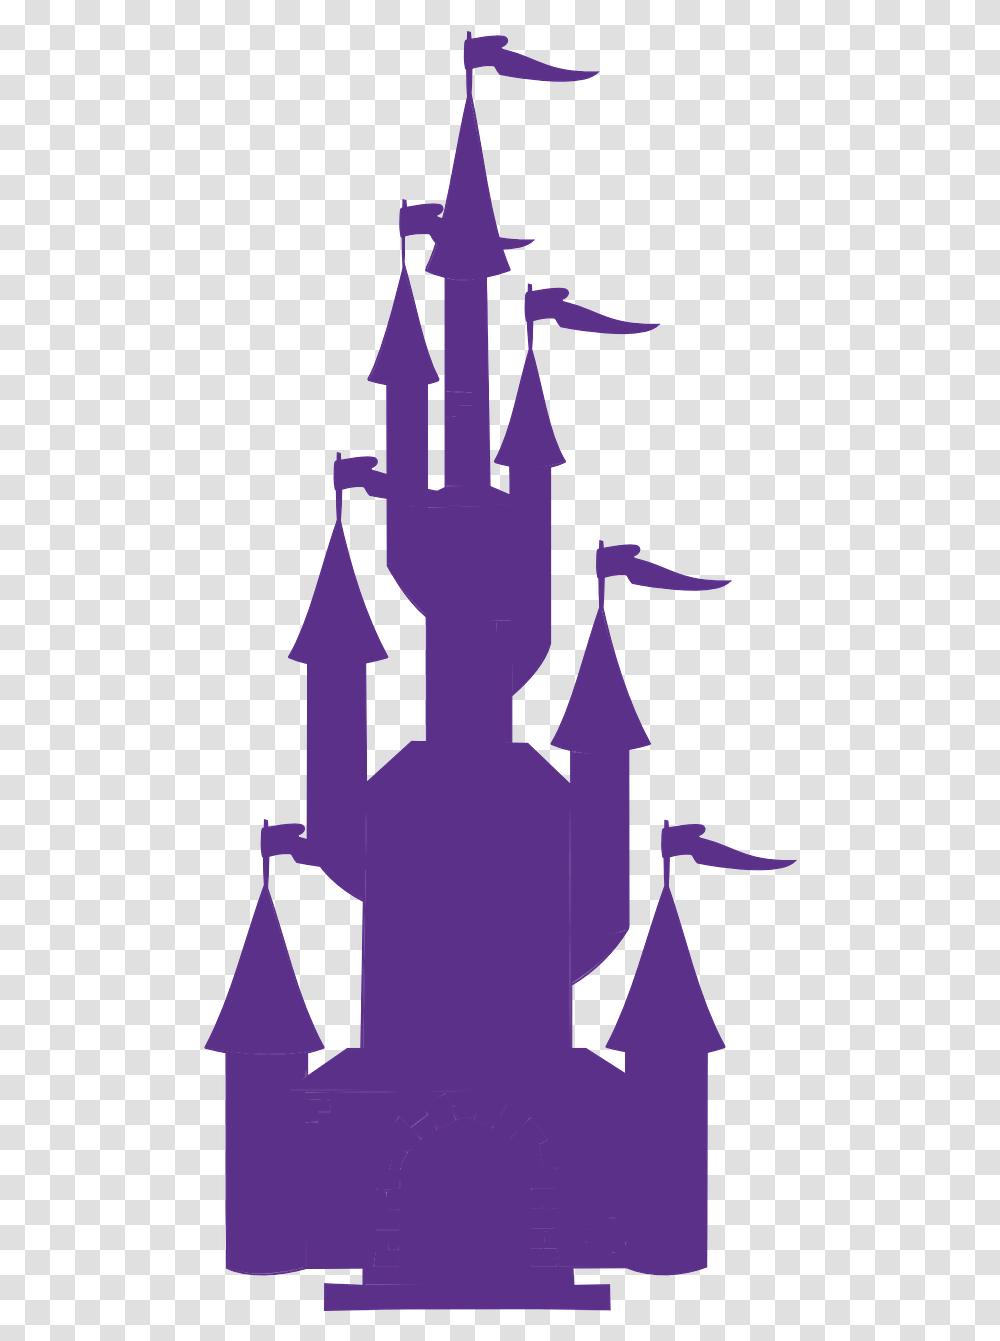 Disney Princess Ultimate Dream Castle Coupon Purple Castle Clipart, Trident, Emblem, Spear Transparent Png